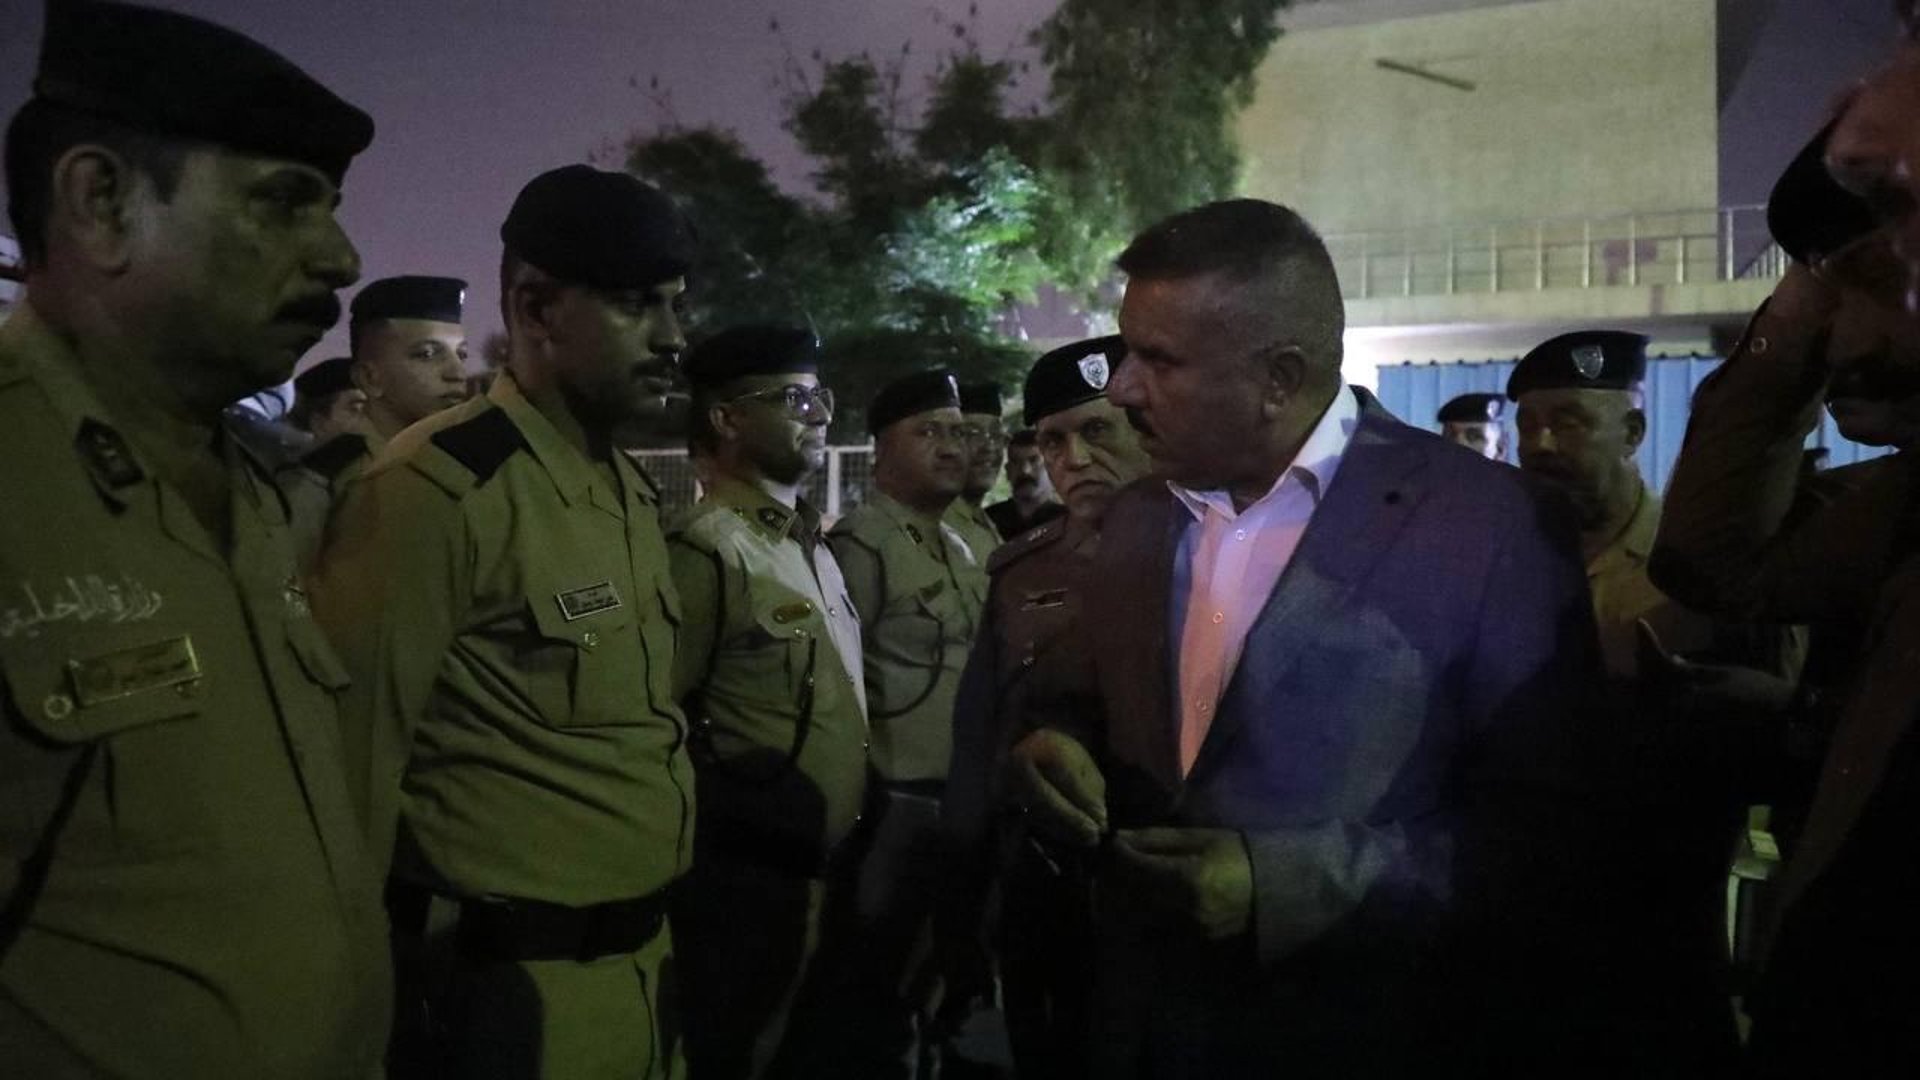 صور: وزير الداخلية يفاجئ مراكز شرطة الكاظمية بزيارة ليلية ويصدر توجيهات